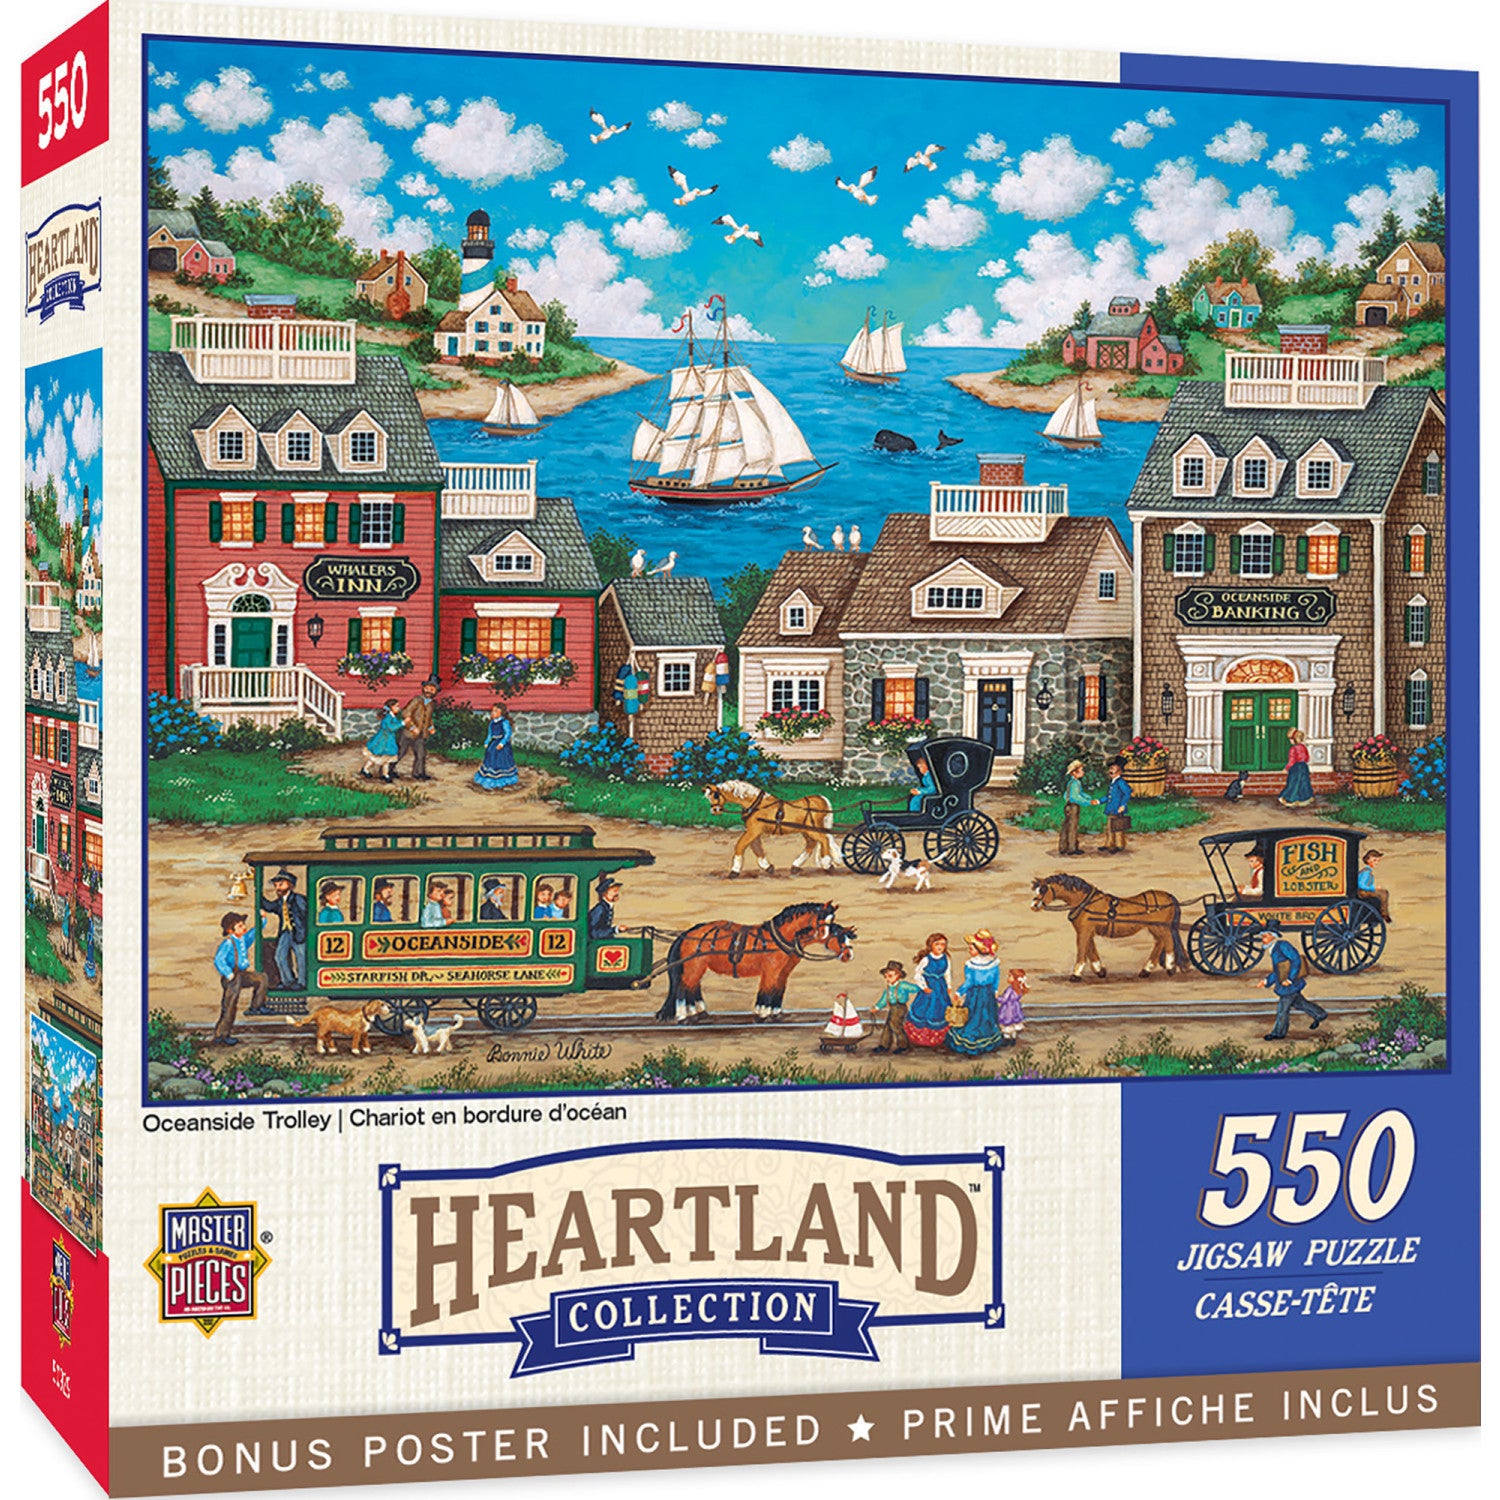 Heartland - Oceanside Trolley 550 Piece Jigsaw Puzzle